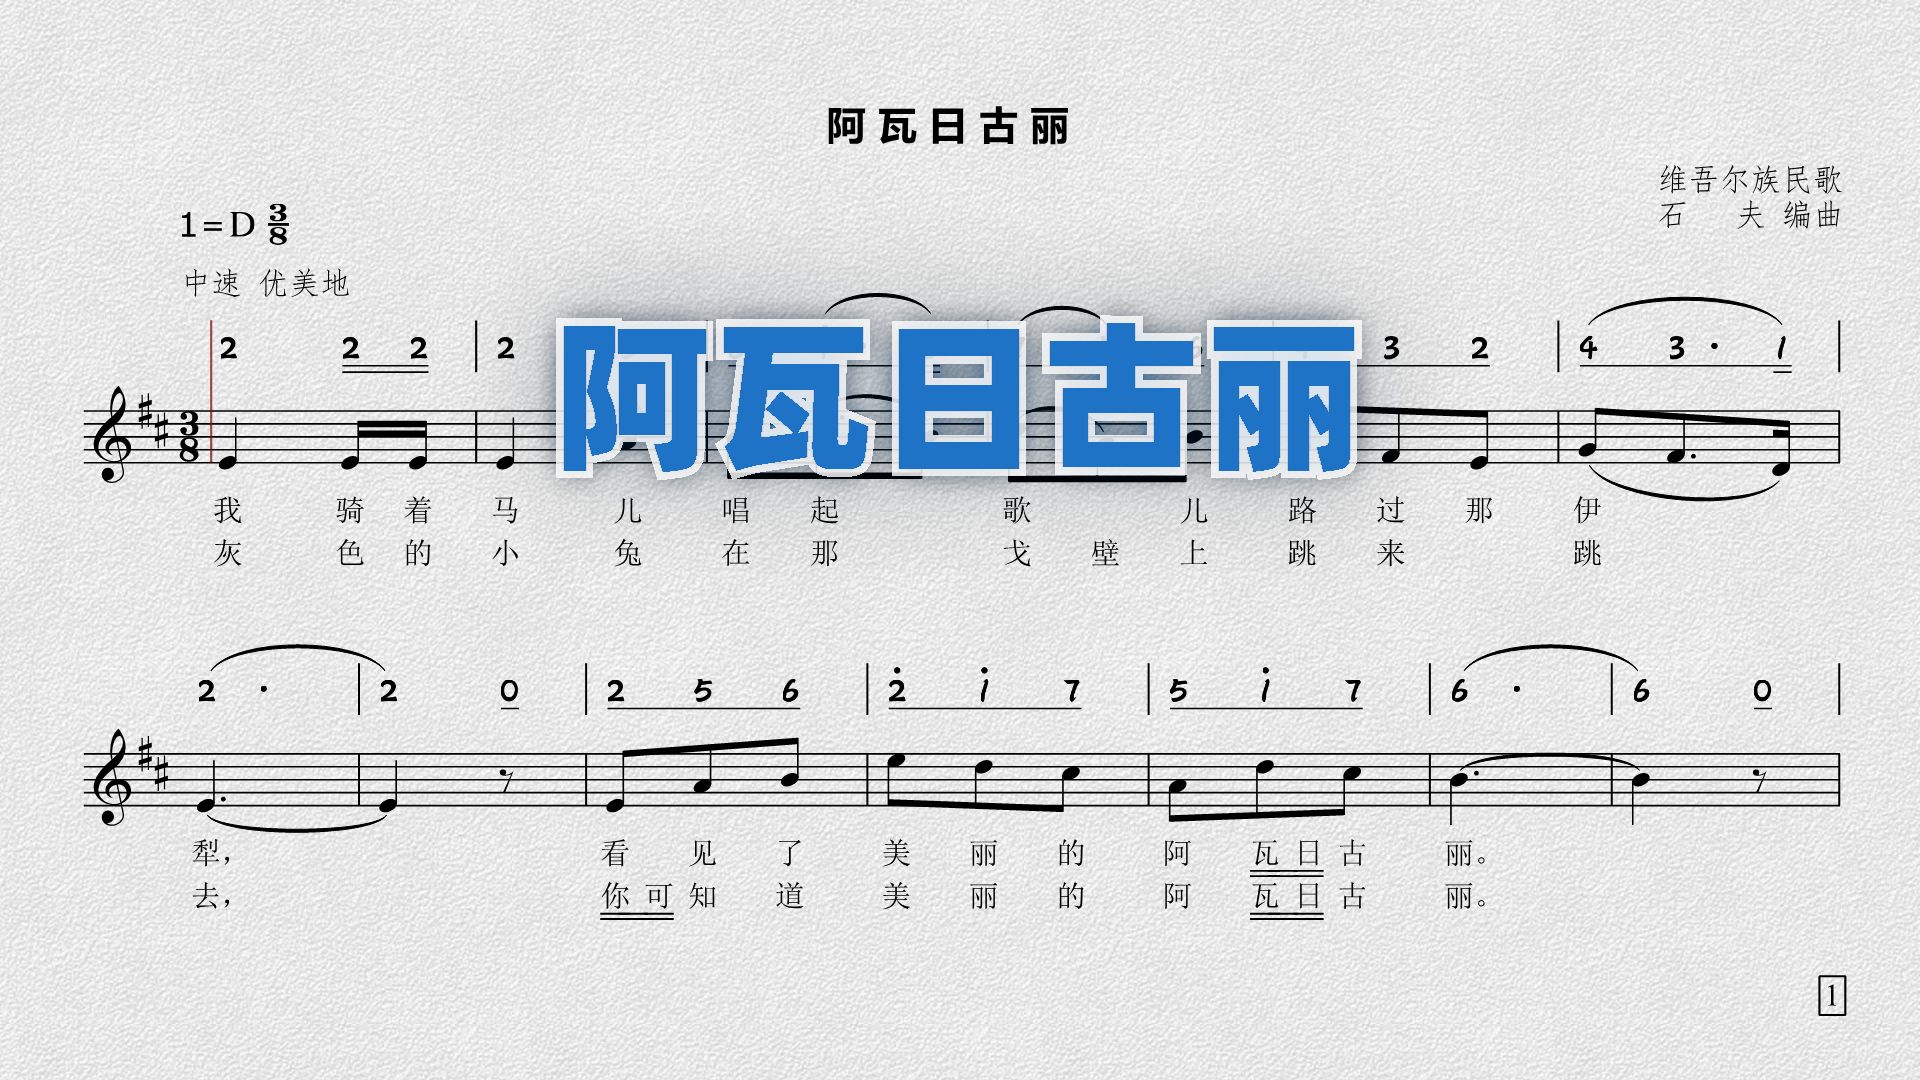 《阿瓦日古丽》——维吾尔族民歌